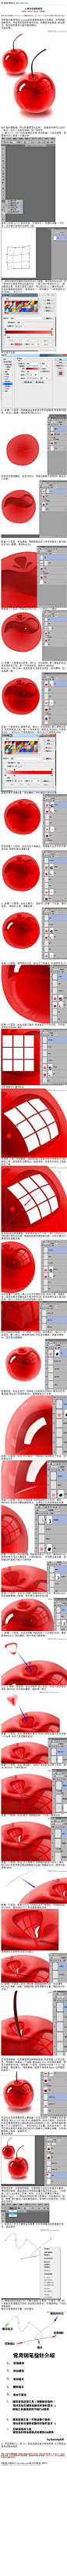 #鼠绘教程#《photoshop鼠绘红樱桃教程》 本教程主要使用Photoshop绘制晶莹剔透的红色樱桃，利用钢笔绘制图形，并且用渐变颜色填充形状，和蒙板局部擦除 添加高光，制作有质感的水晶效果的樱桃 教程网址：http://bbs.16xx8.com/thread-167333-1-1.html